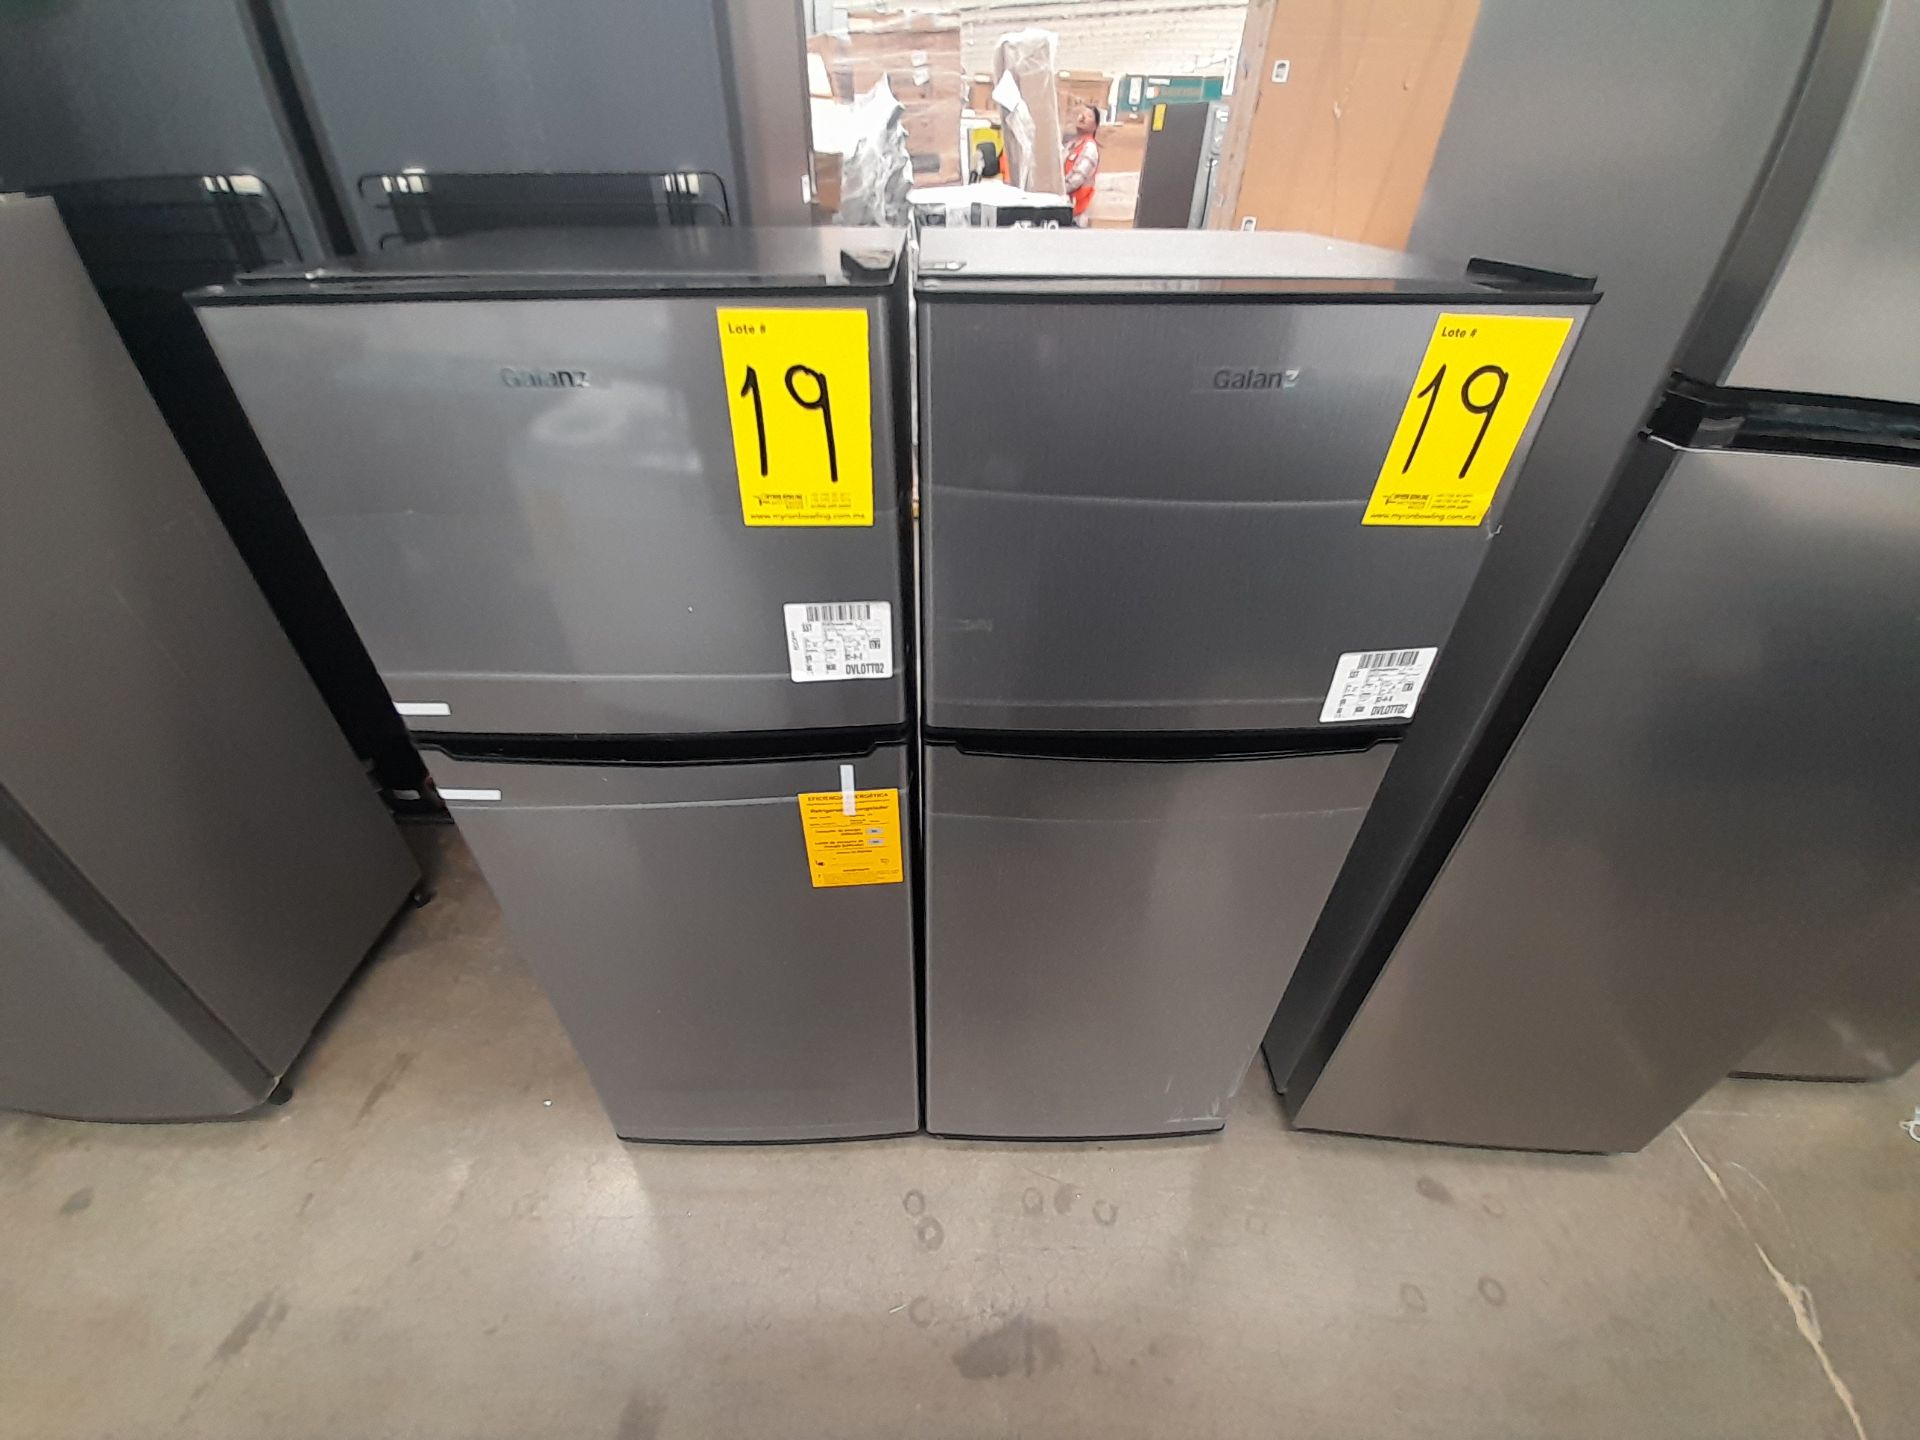 Lote de 2 refrigeradores contiene: 1 refrigerador Marca GALANZ, Modelo GLR55TS1, Serie ND, Colo